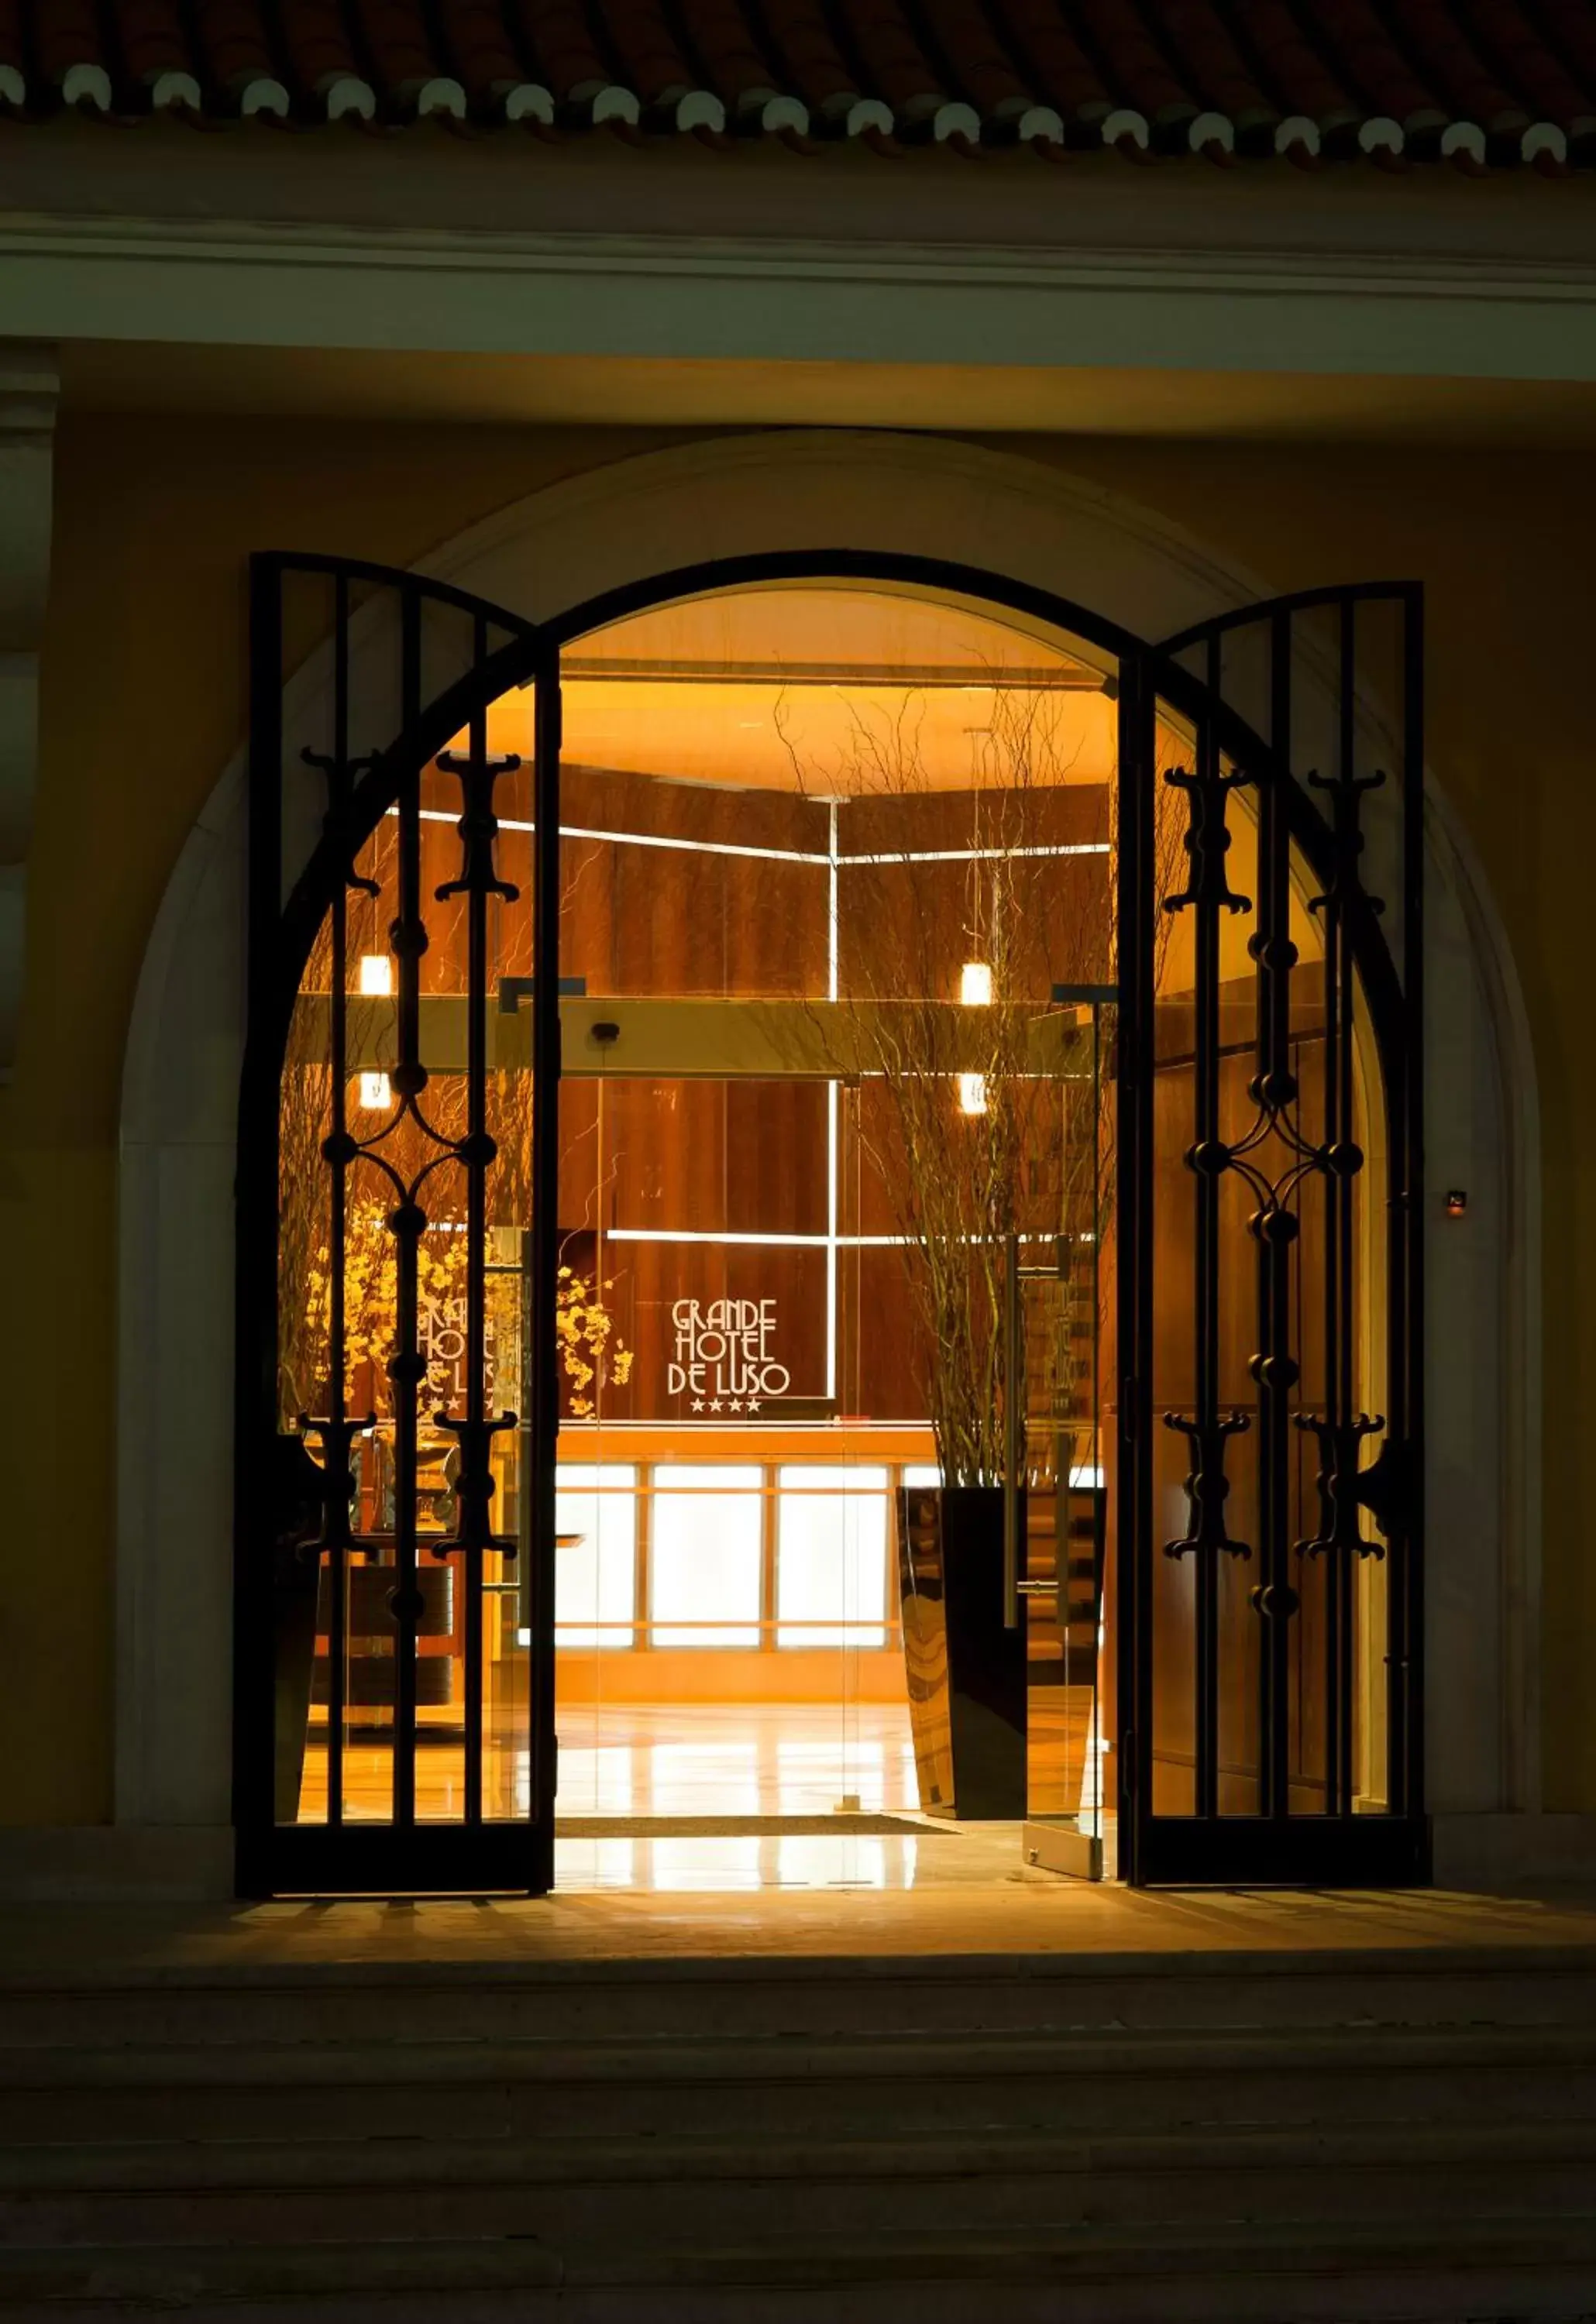 Facade/entrance in Grande Hotel De Luso